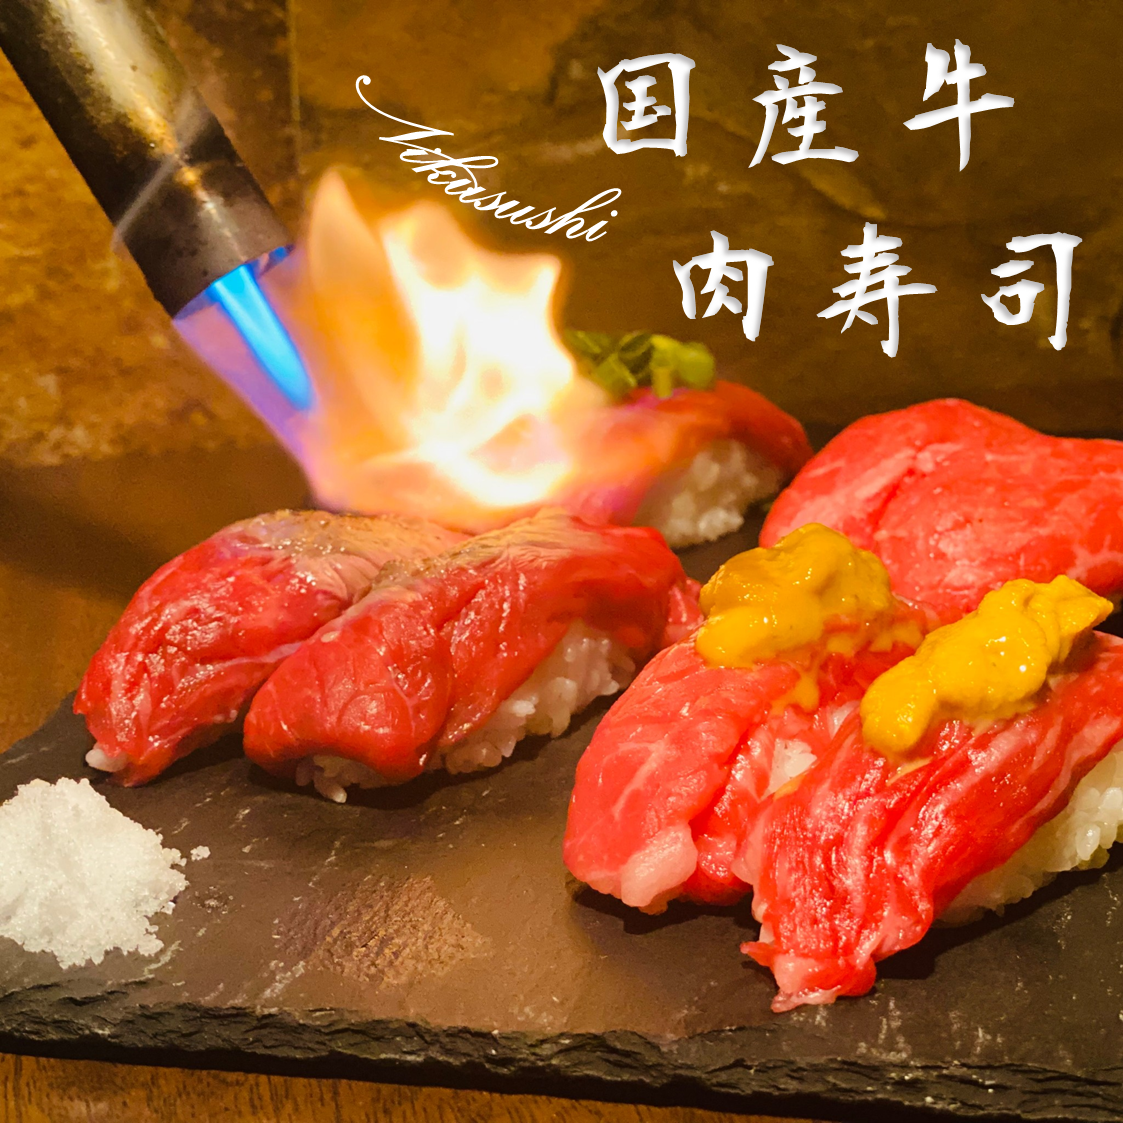 국산 일본 쇠고기 스시 2관 600엔☆한국 요리를 중심으로 100종류 이상